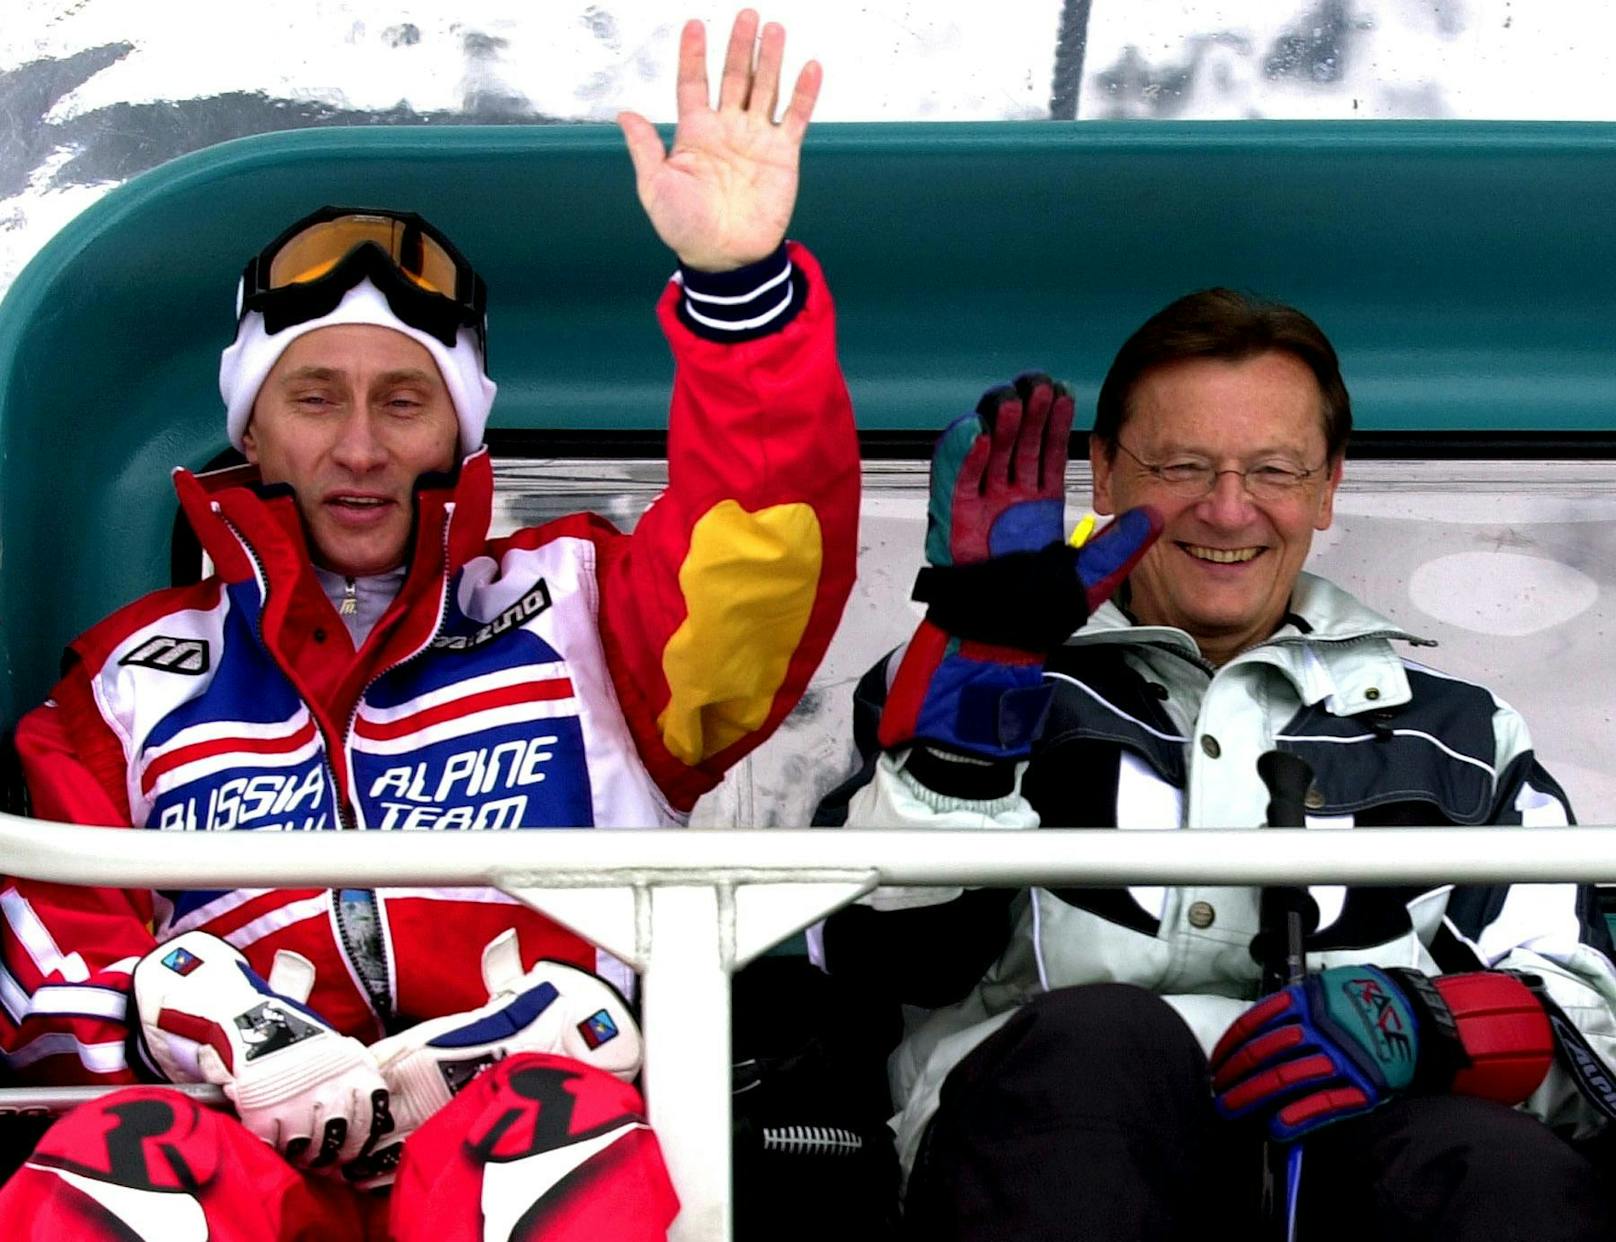 Ein Naheverhältnis zu Putin wird auch Ex-ÖVP-Bundeskanzler Wolfgang Schüssel nachgesagt. Hier sieht man ihn gemeinsam mit dem russischen Präsidenten beim Skifahren in St. Christoph am Arlberg im Jahr 2001.